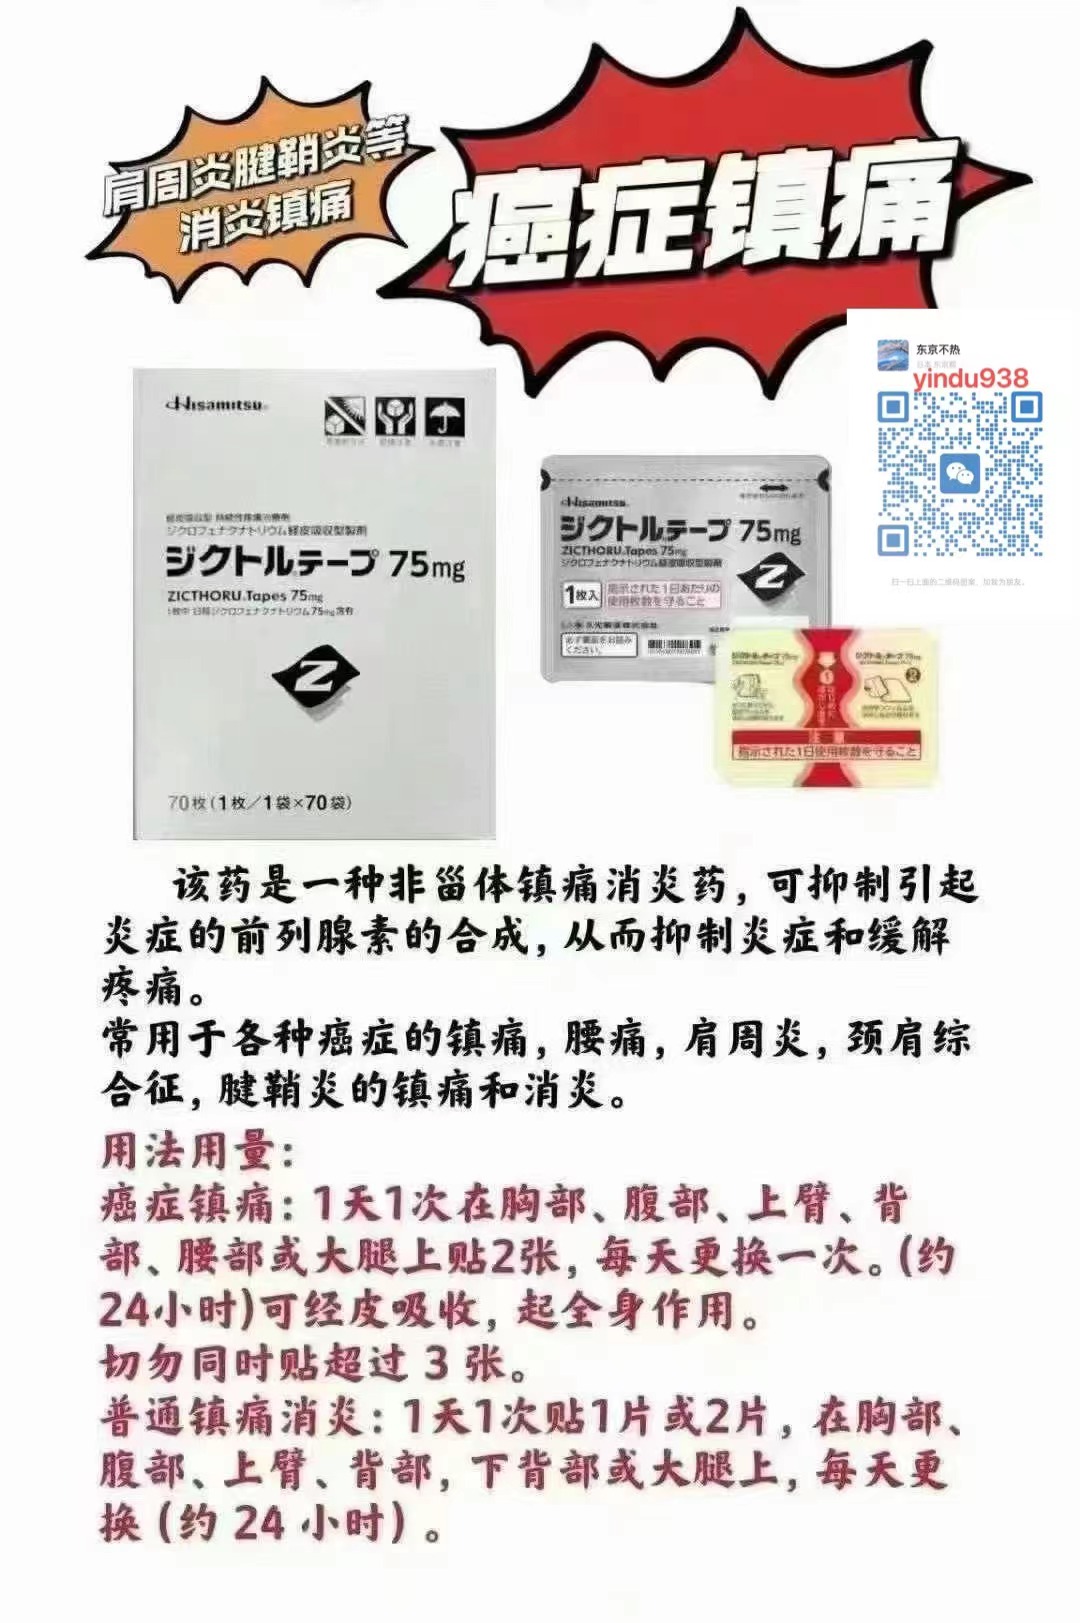 双氯芬酸钠(Diclofenac sodium)日本癌症止疼贴的疗效与作用及副作用